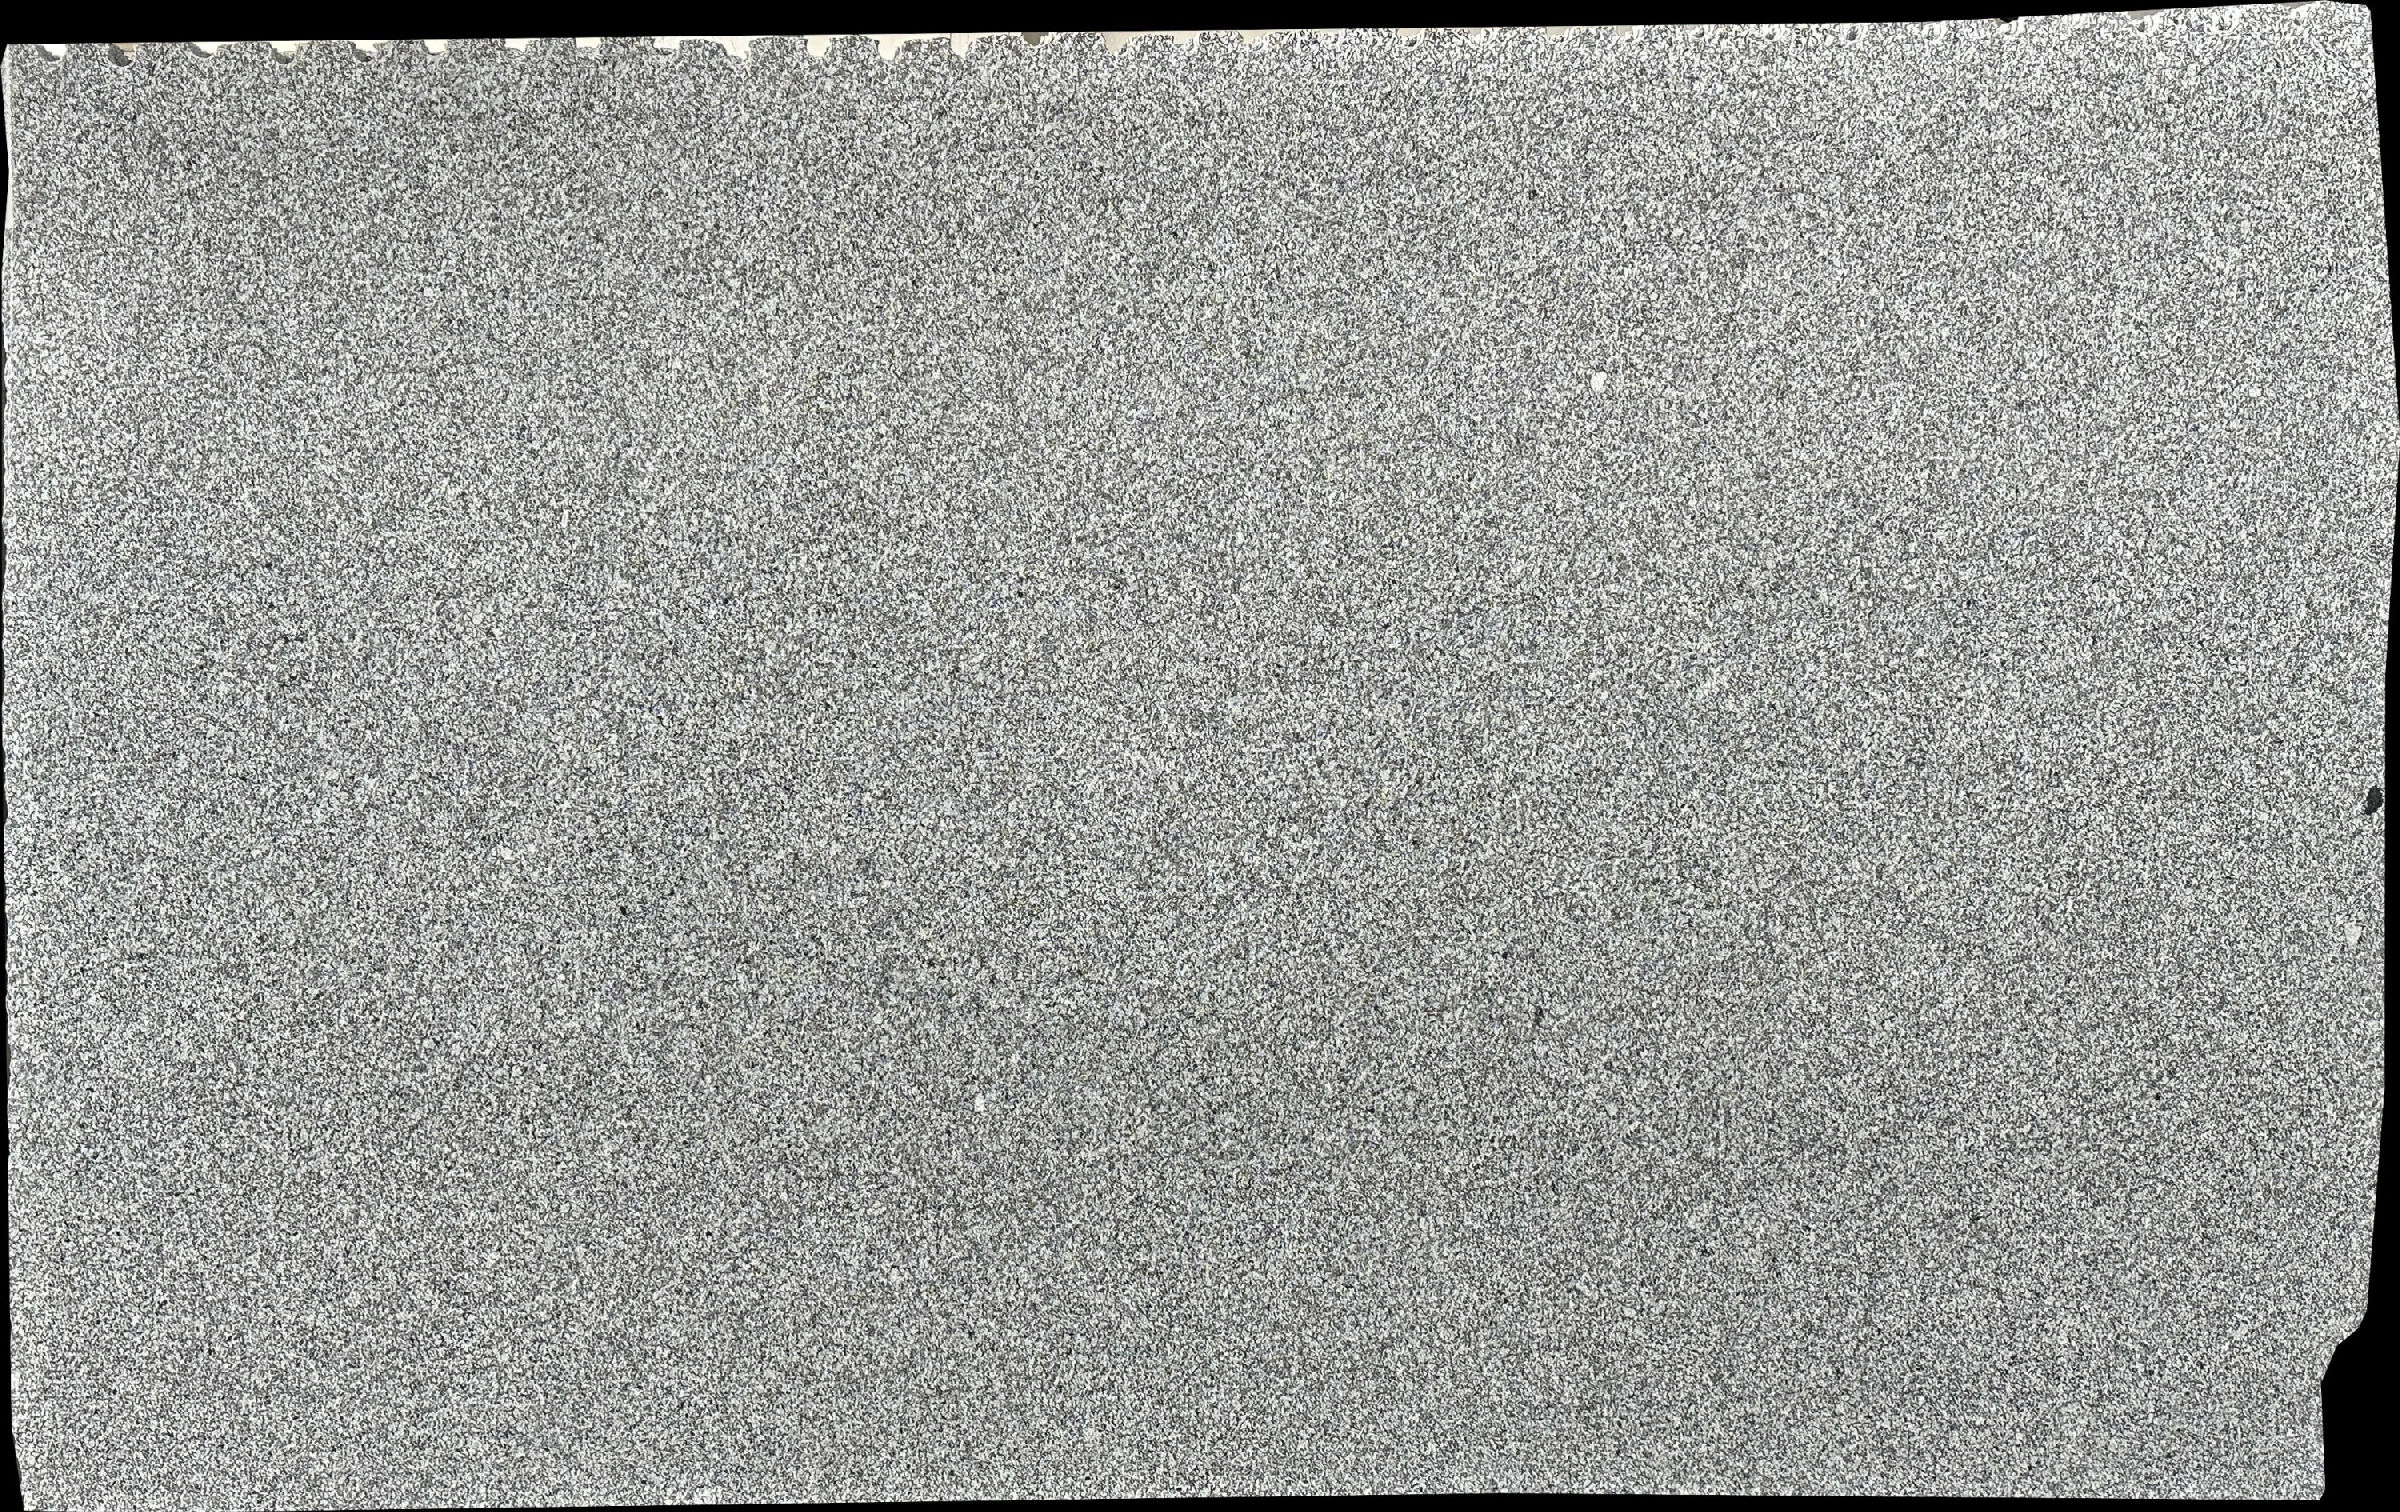 Grigio Aveiro / Gris Penalva Granite Slabs for Flooring